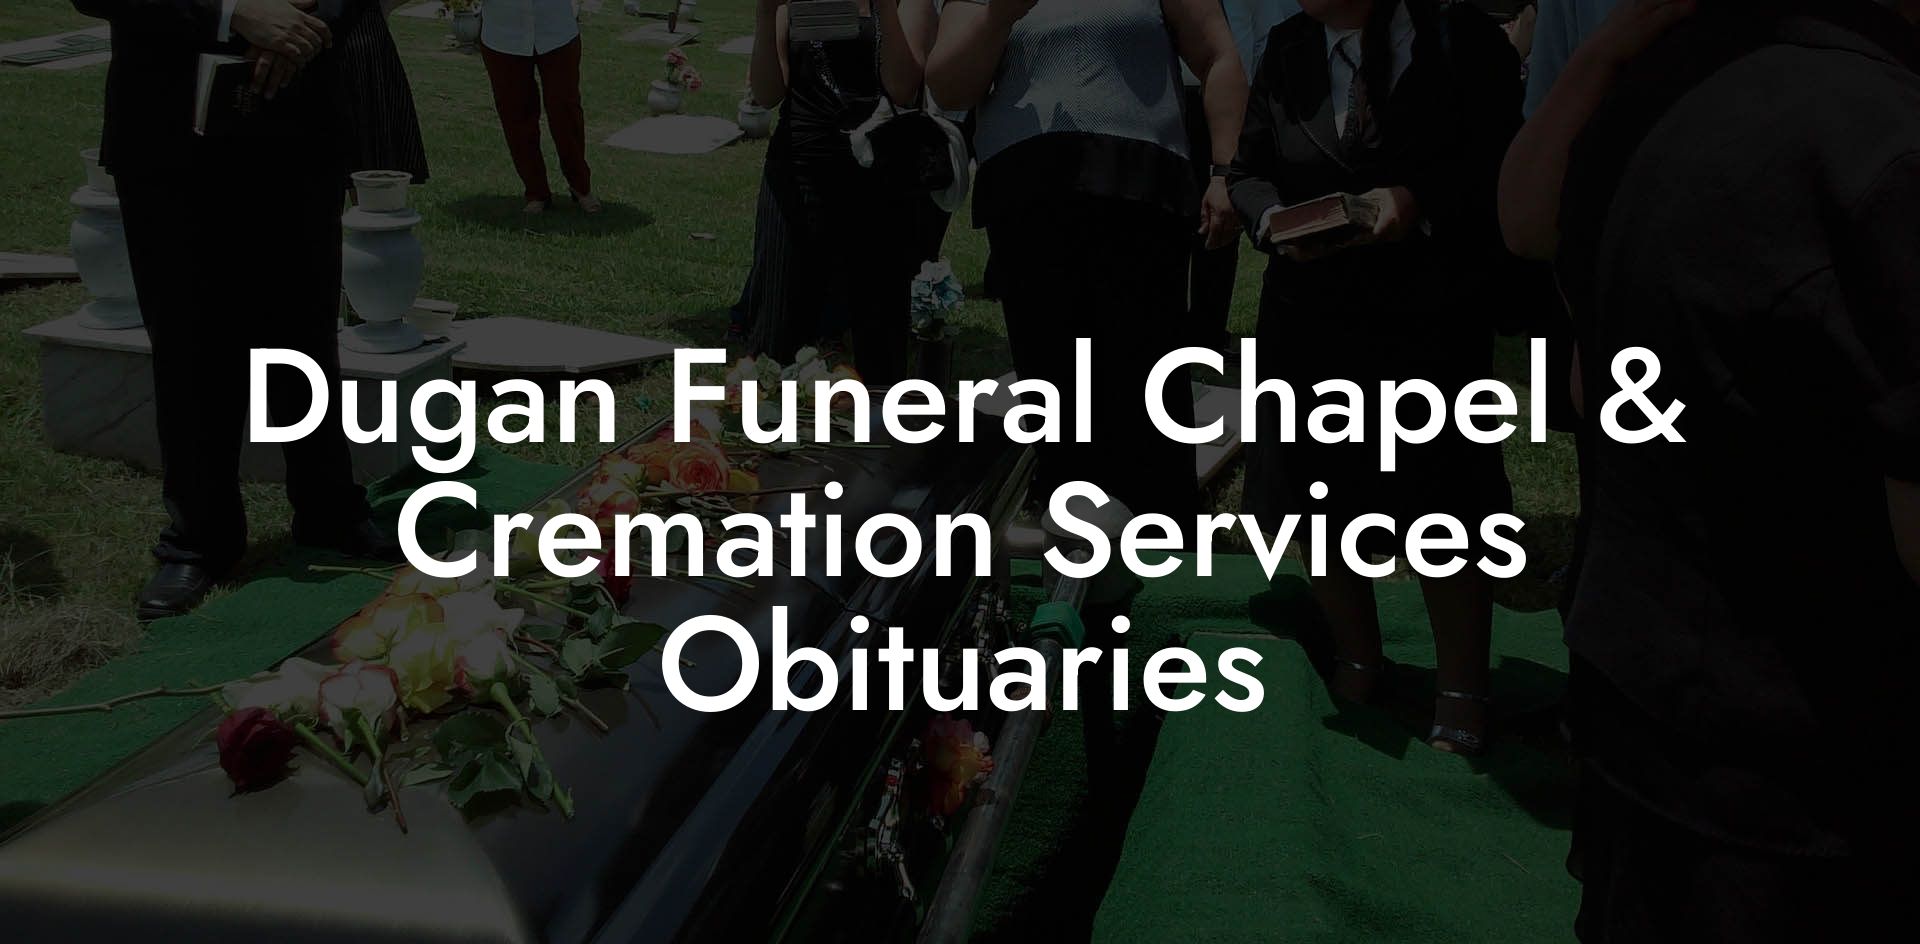 Dugan Funeral Chapel & Cremation Services Obituaries